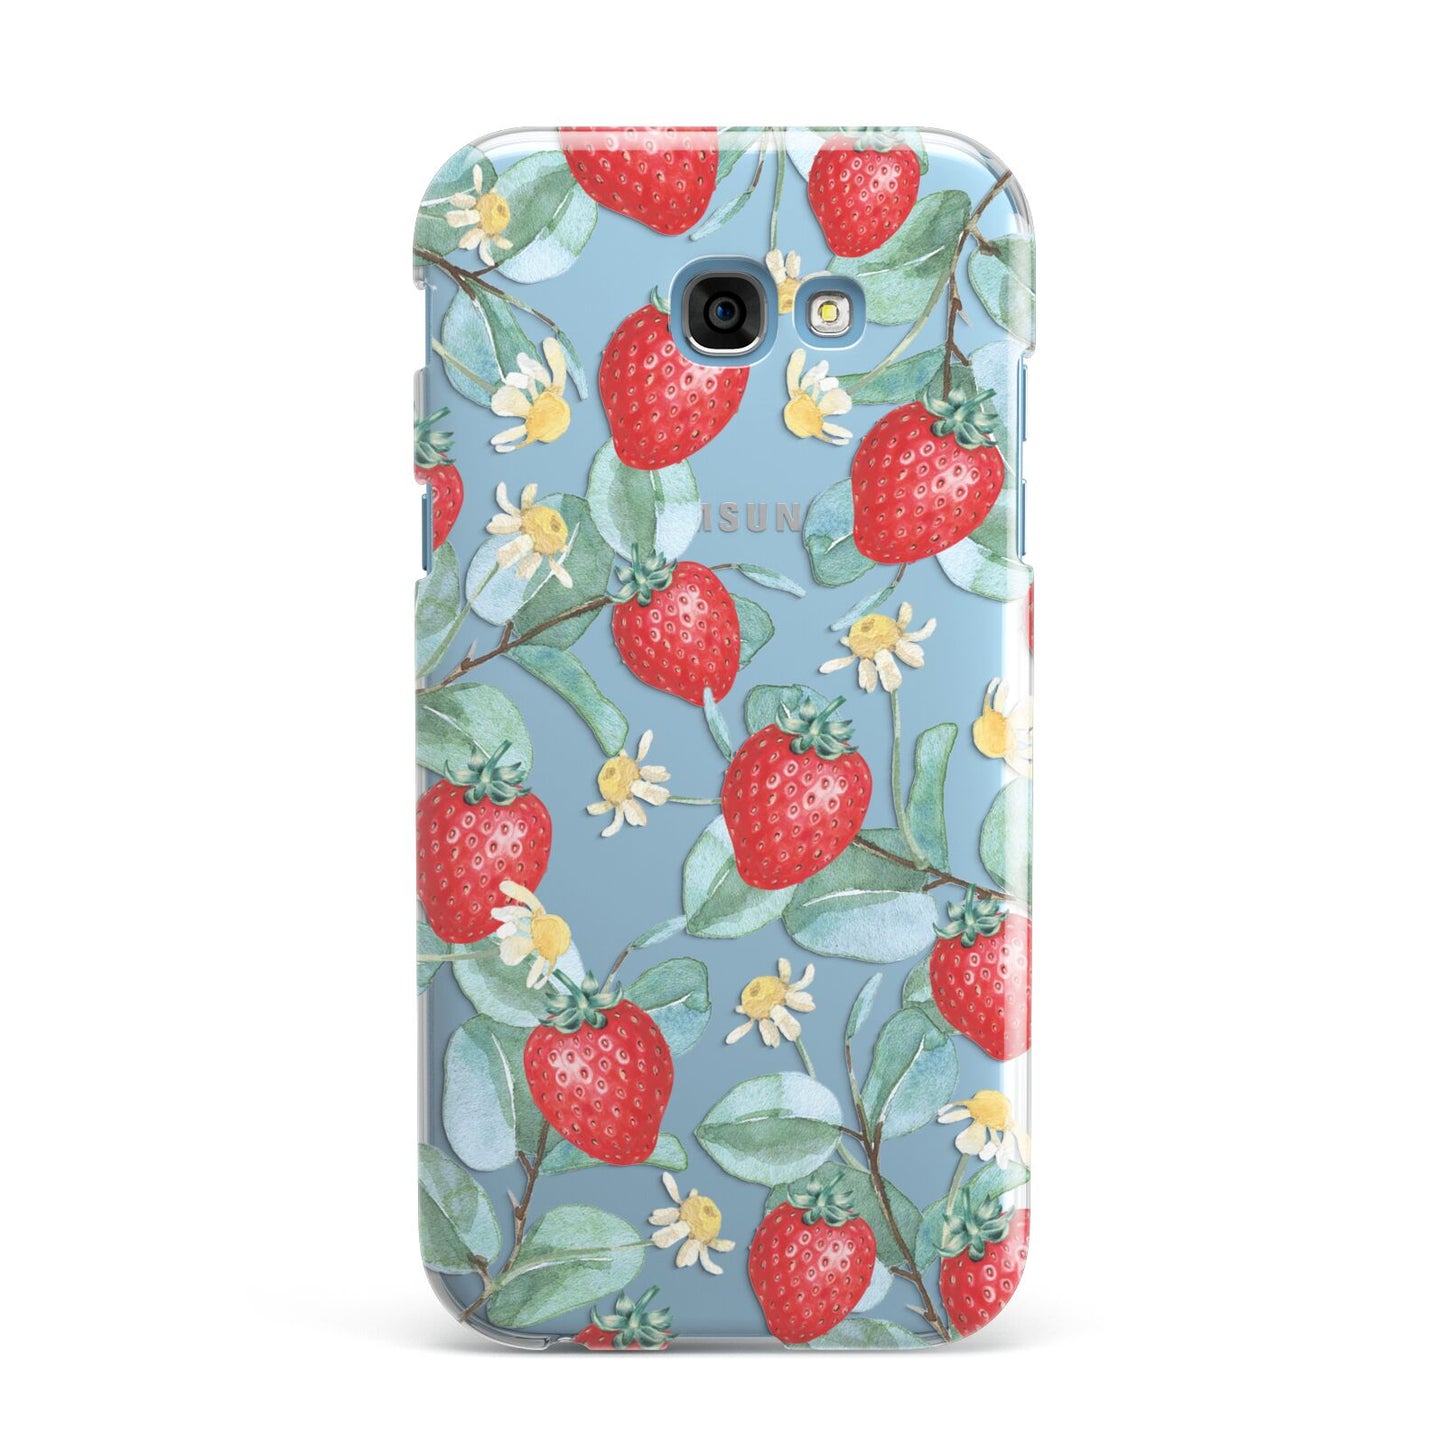 Strawberry Plant Samsung Galaxy A7 2017 Case